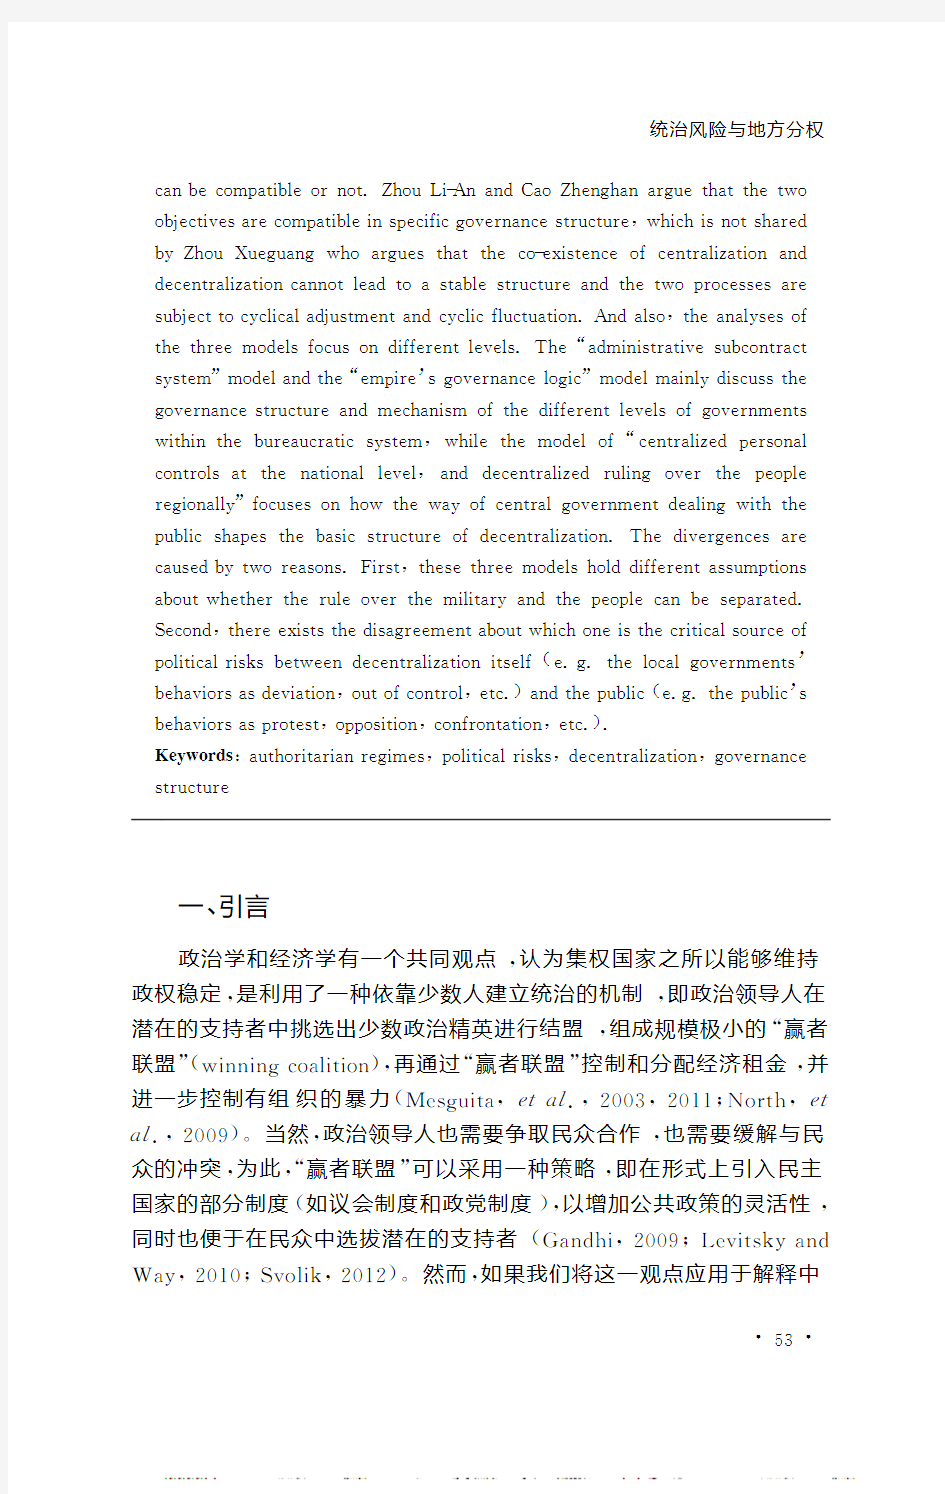 曹正汉 统治风险与地方分权关于中国国家治理的三种理论及其比较_